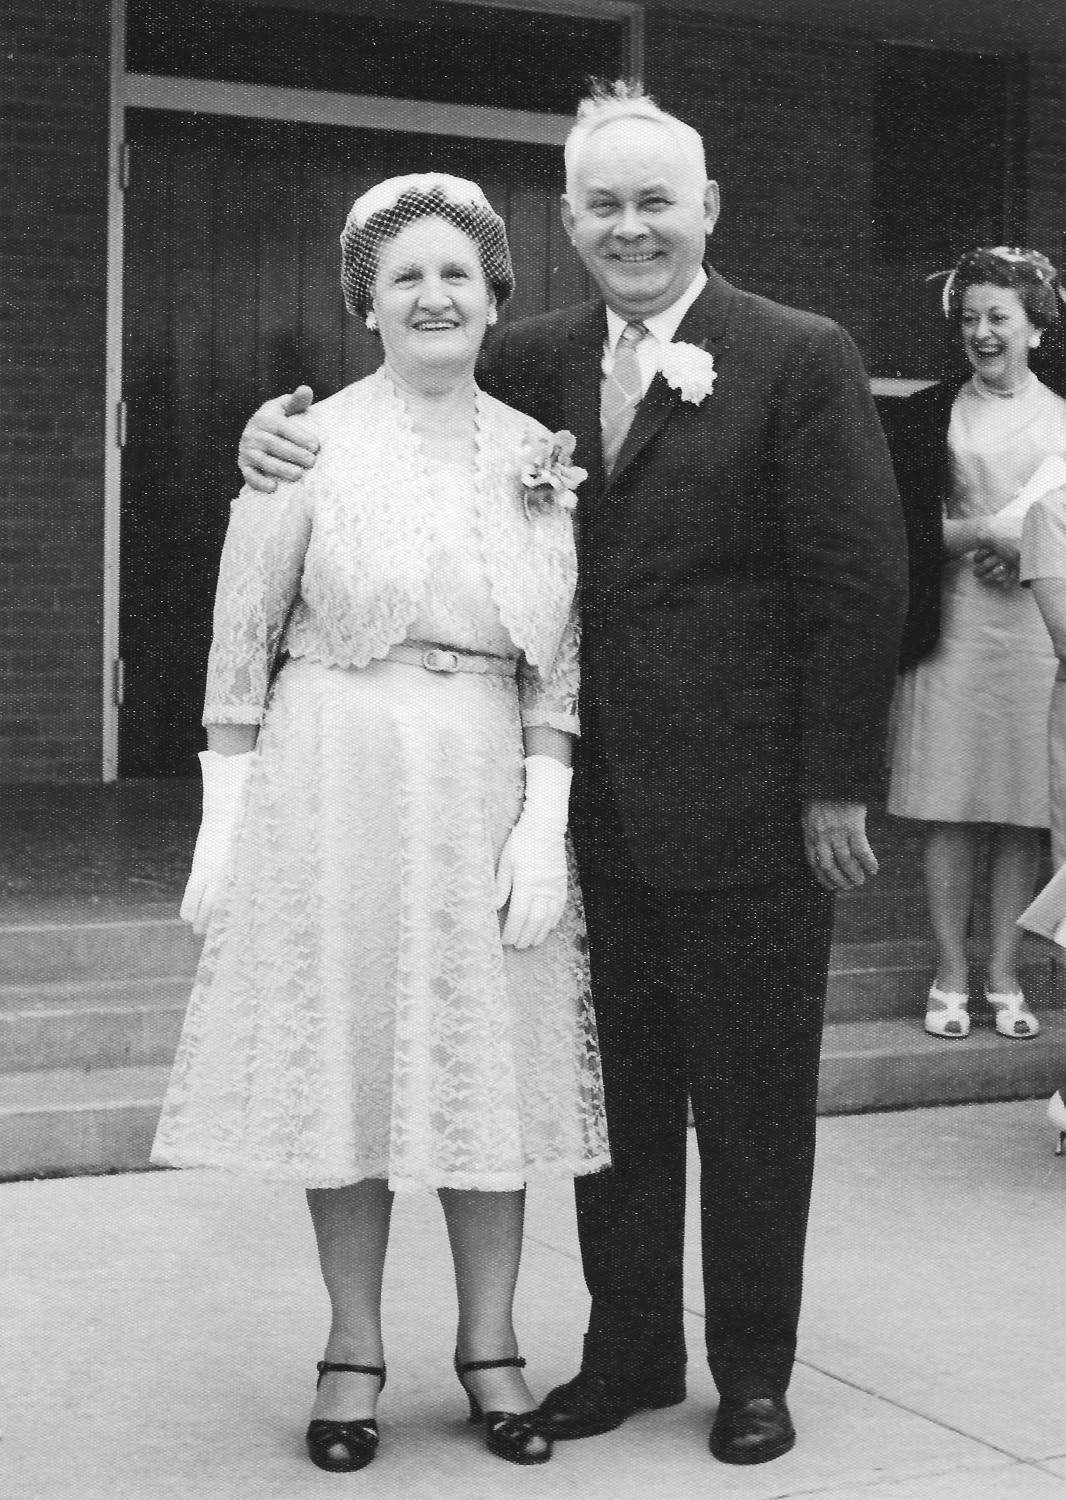 Mom and Pa at Linda and Herb Jr's wedding, 1964